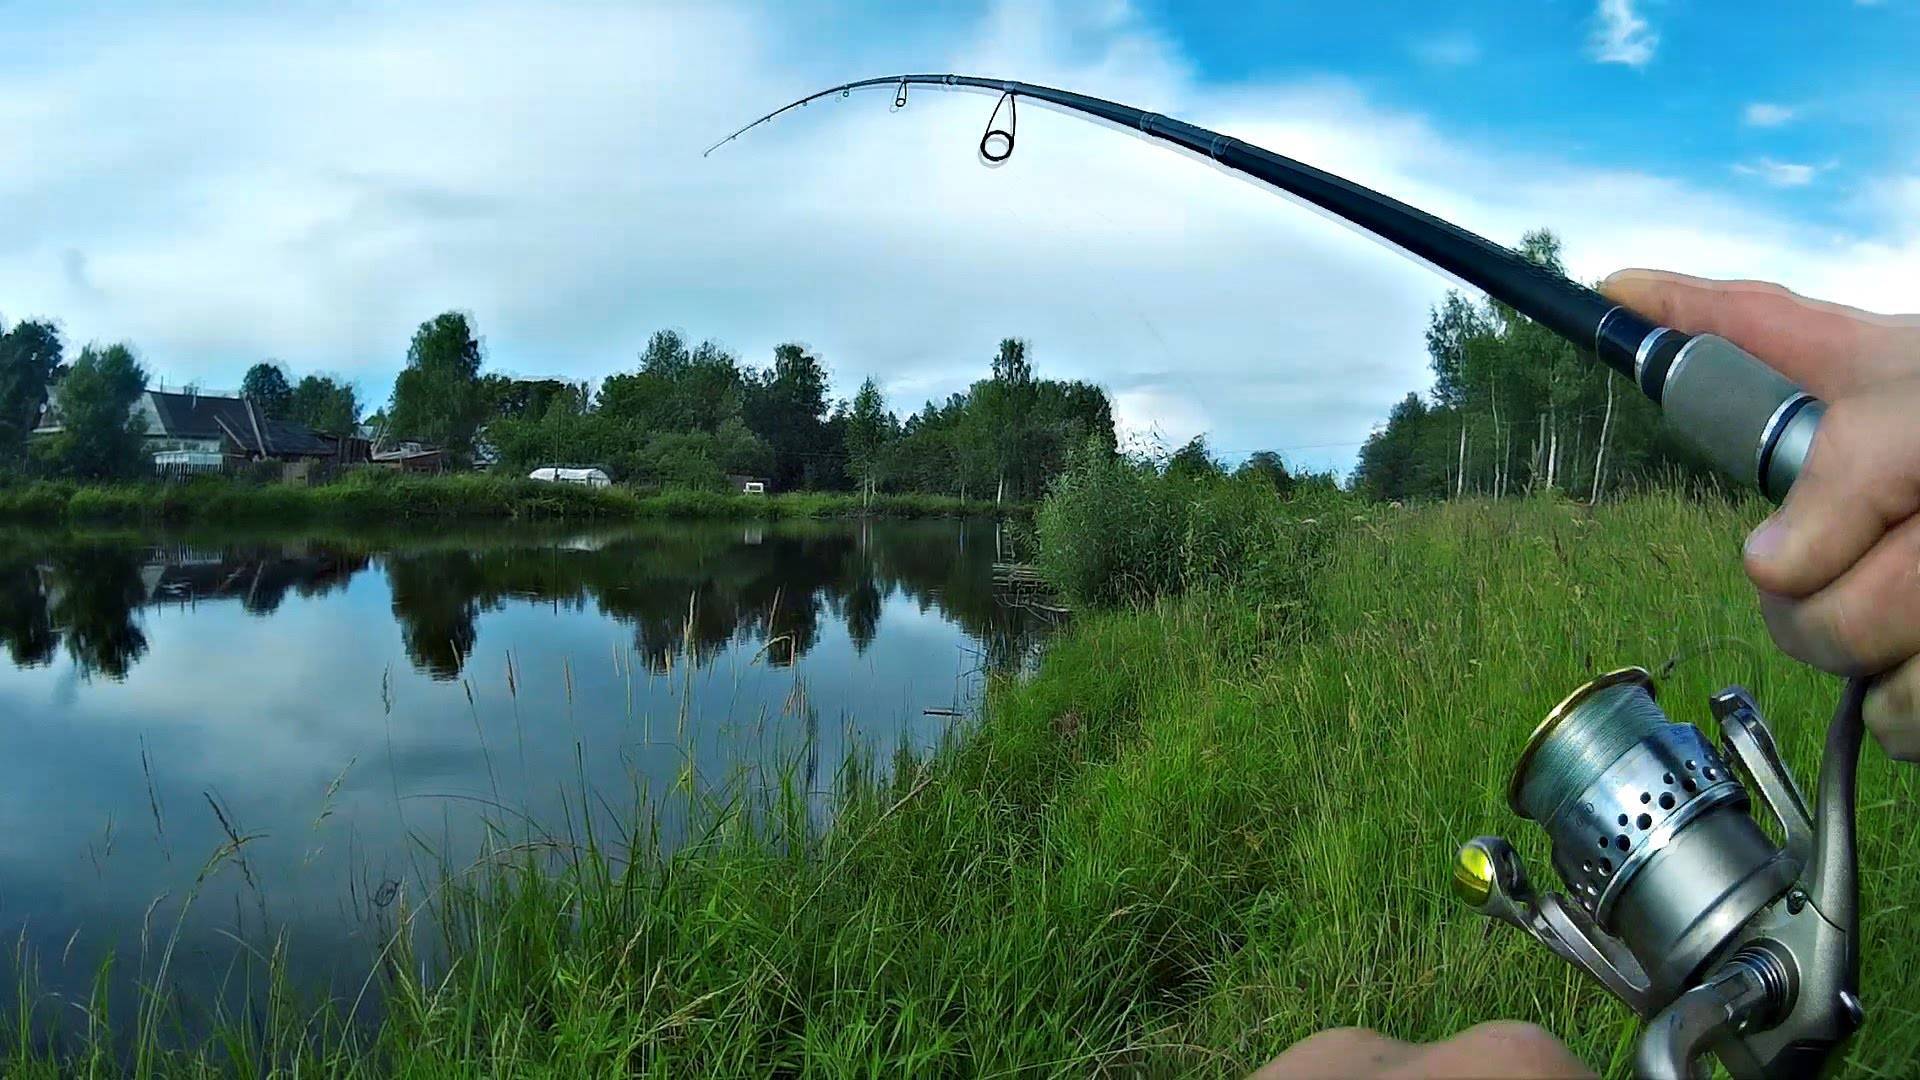 Спиннинг летом видео. Спиннинг. Ловля рыбы на спиннинг. Природа рыбалка. Удочка для рыбалки с берега спиннинг.